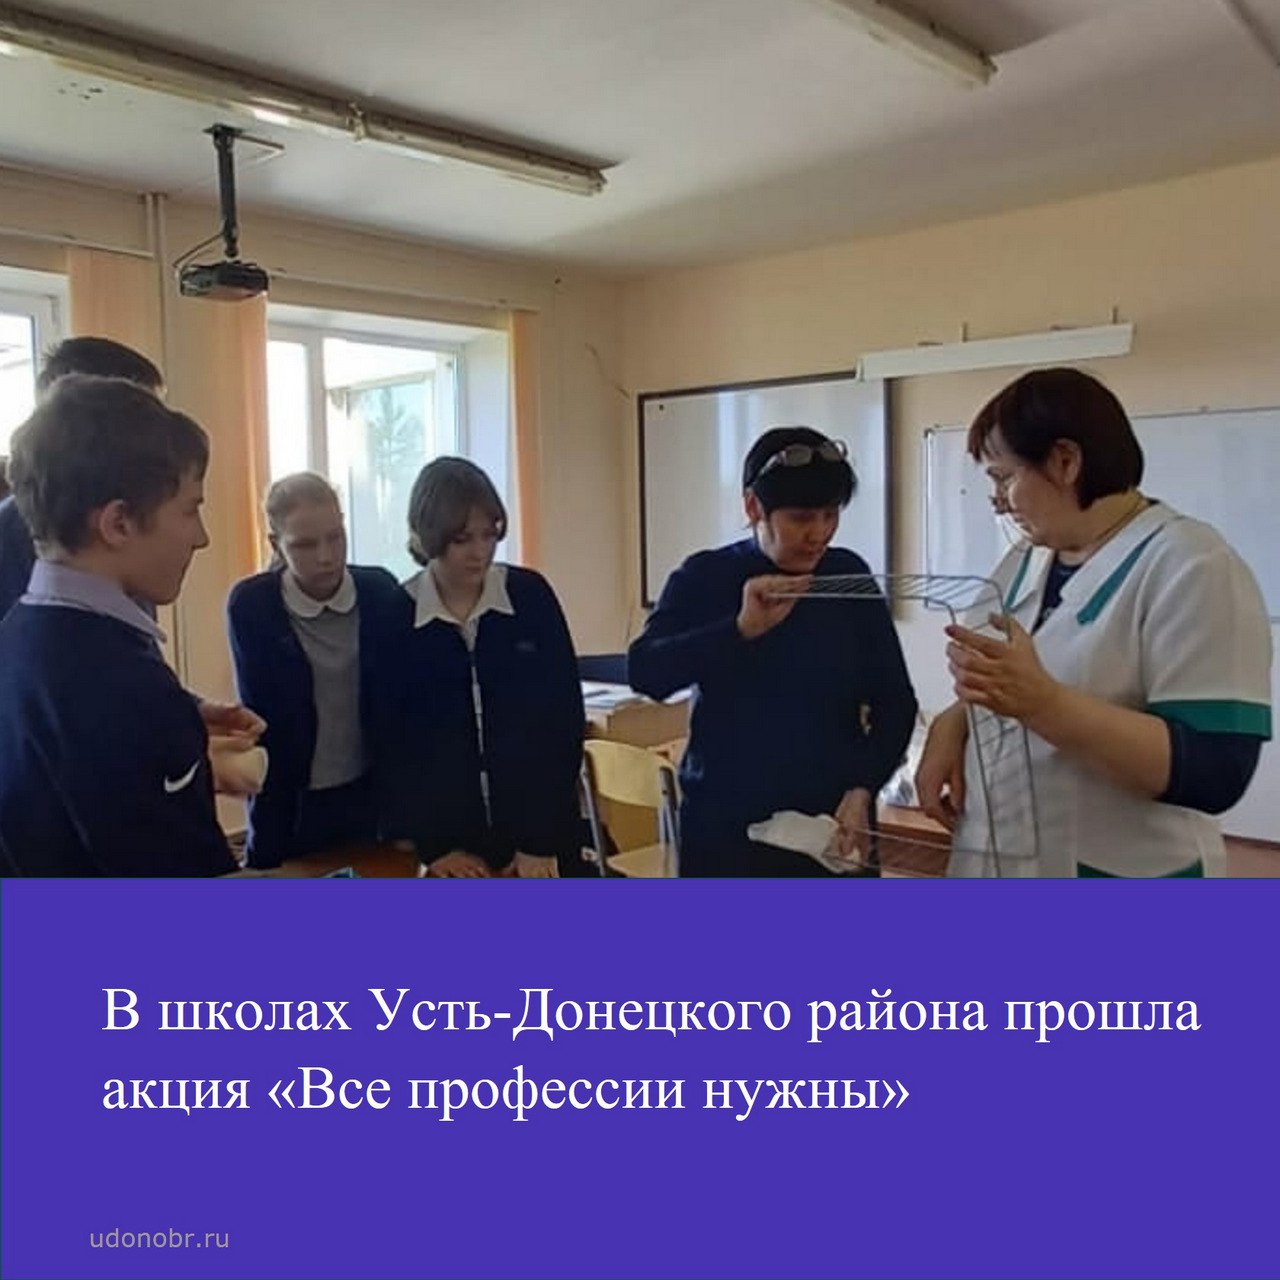 В школах Усть-Донецкого района прошла акция «Все профессии нужны»